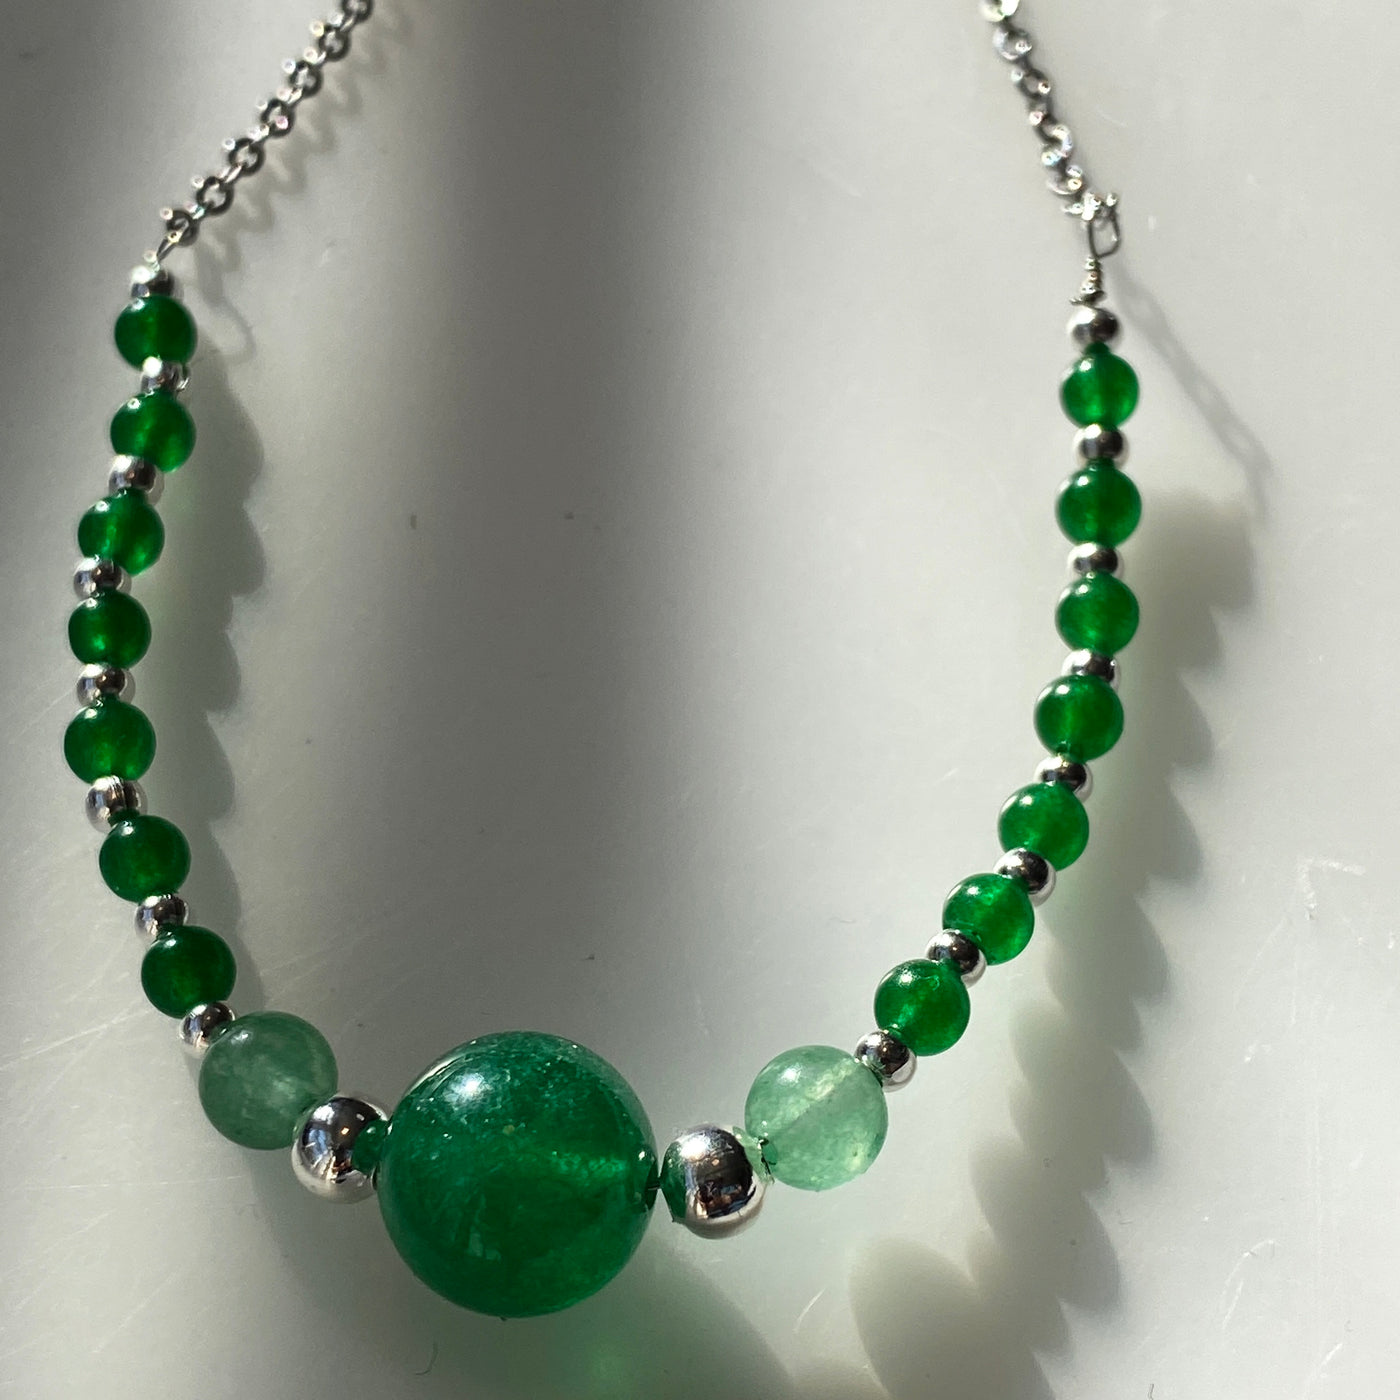 Halskette mit grünem Calcedon in verschiedenen Größen und Aventurin